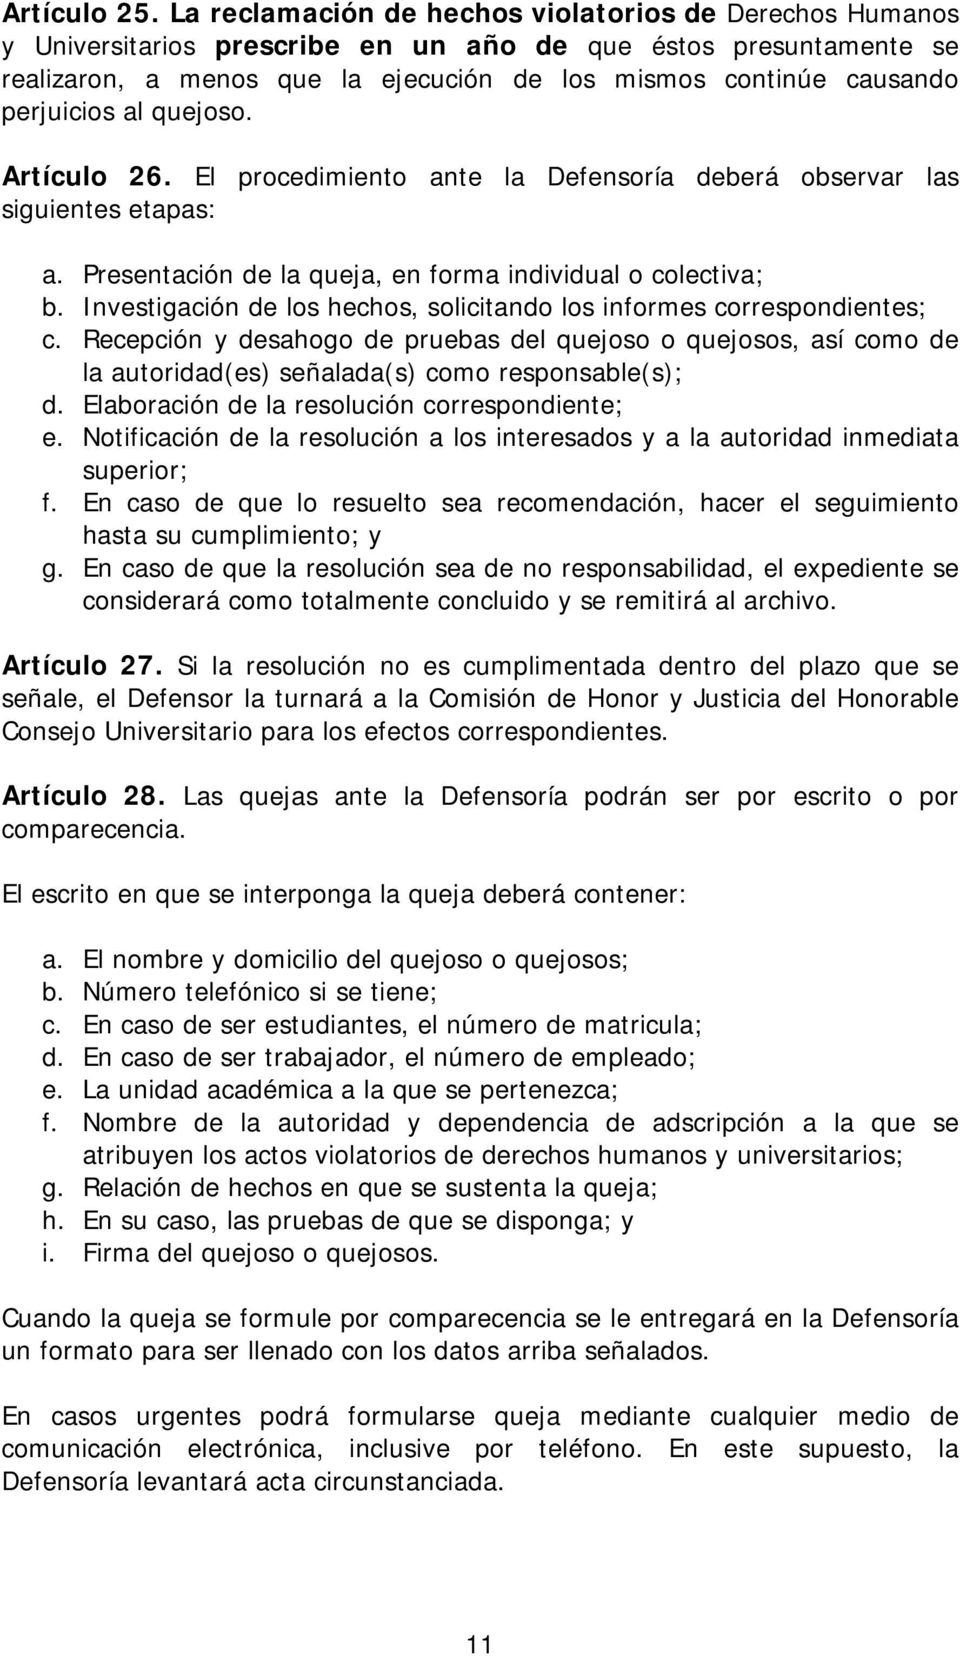 perjuicios al quejoso. Artículo 26. El procedimiento ante la Defensoría deberá observar las siguientes etapas: a. Presentación de la queja, en forma individual o colectiva; b.